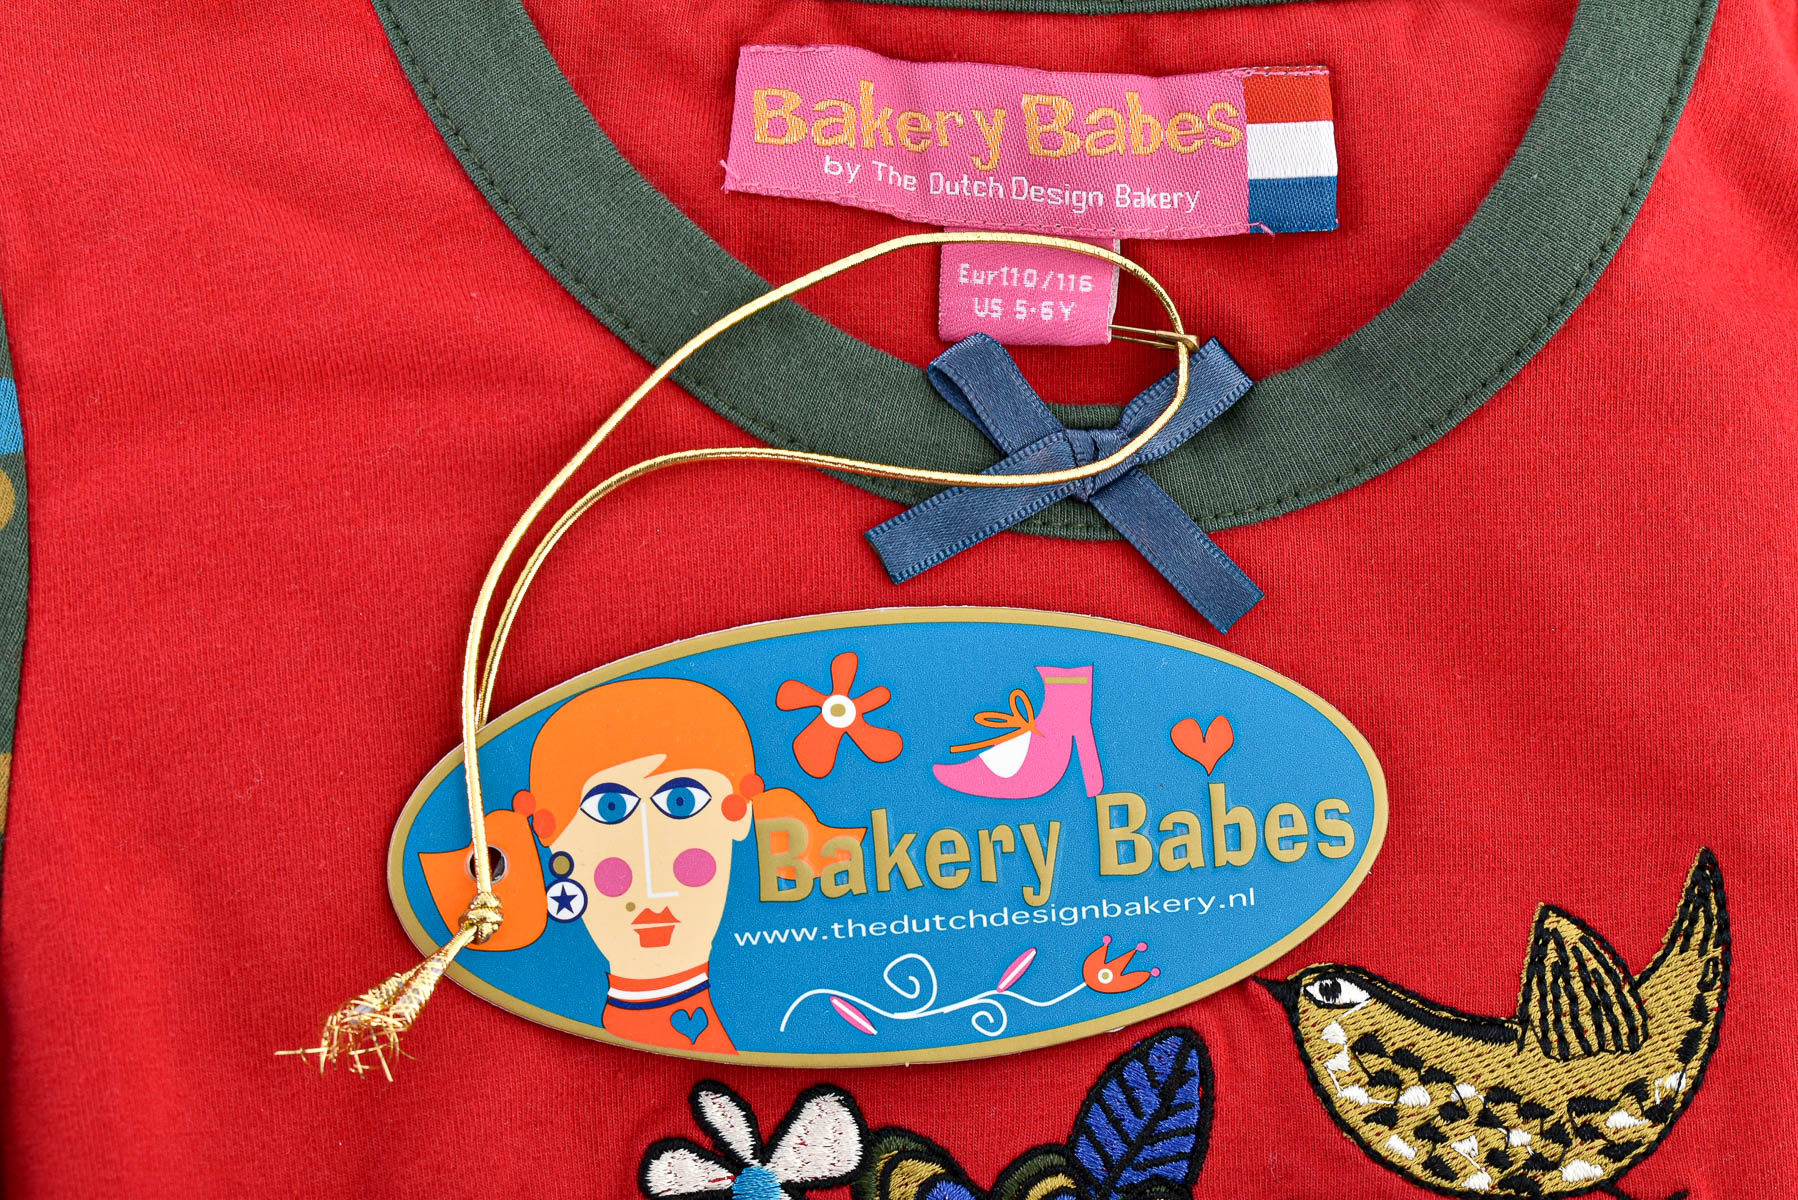 Παιδικό φόρεμα - Bakery Babes by The Dutch Design Bakery - 2